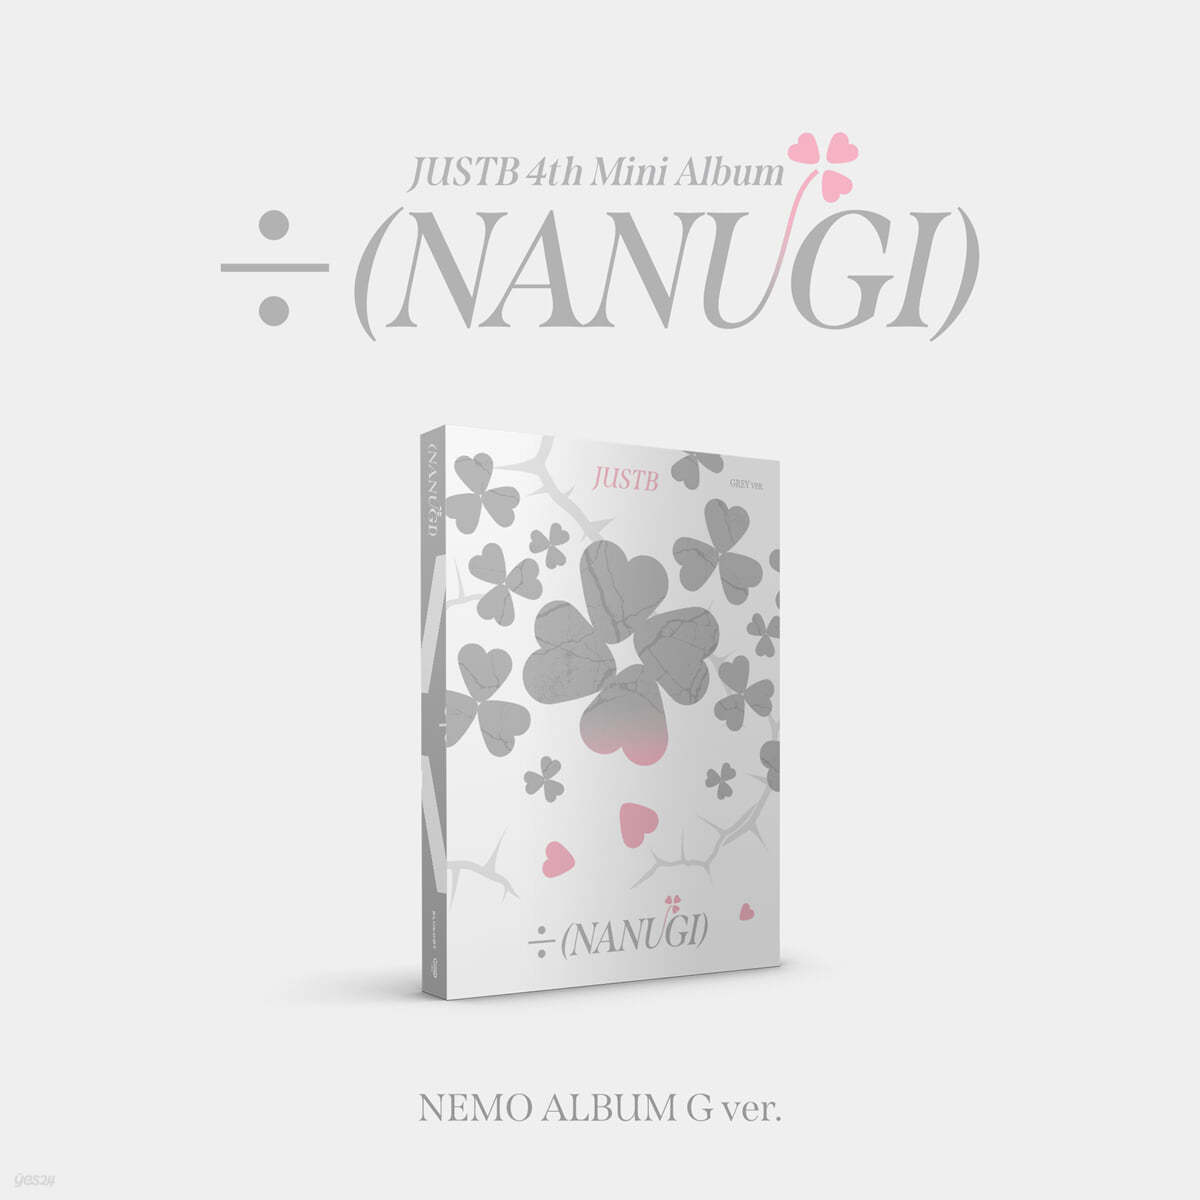 저스트비 (JUST B) - 미니앨범 4집 : ÷ (NANUGI) [Nemo Album] [Grey ver.]